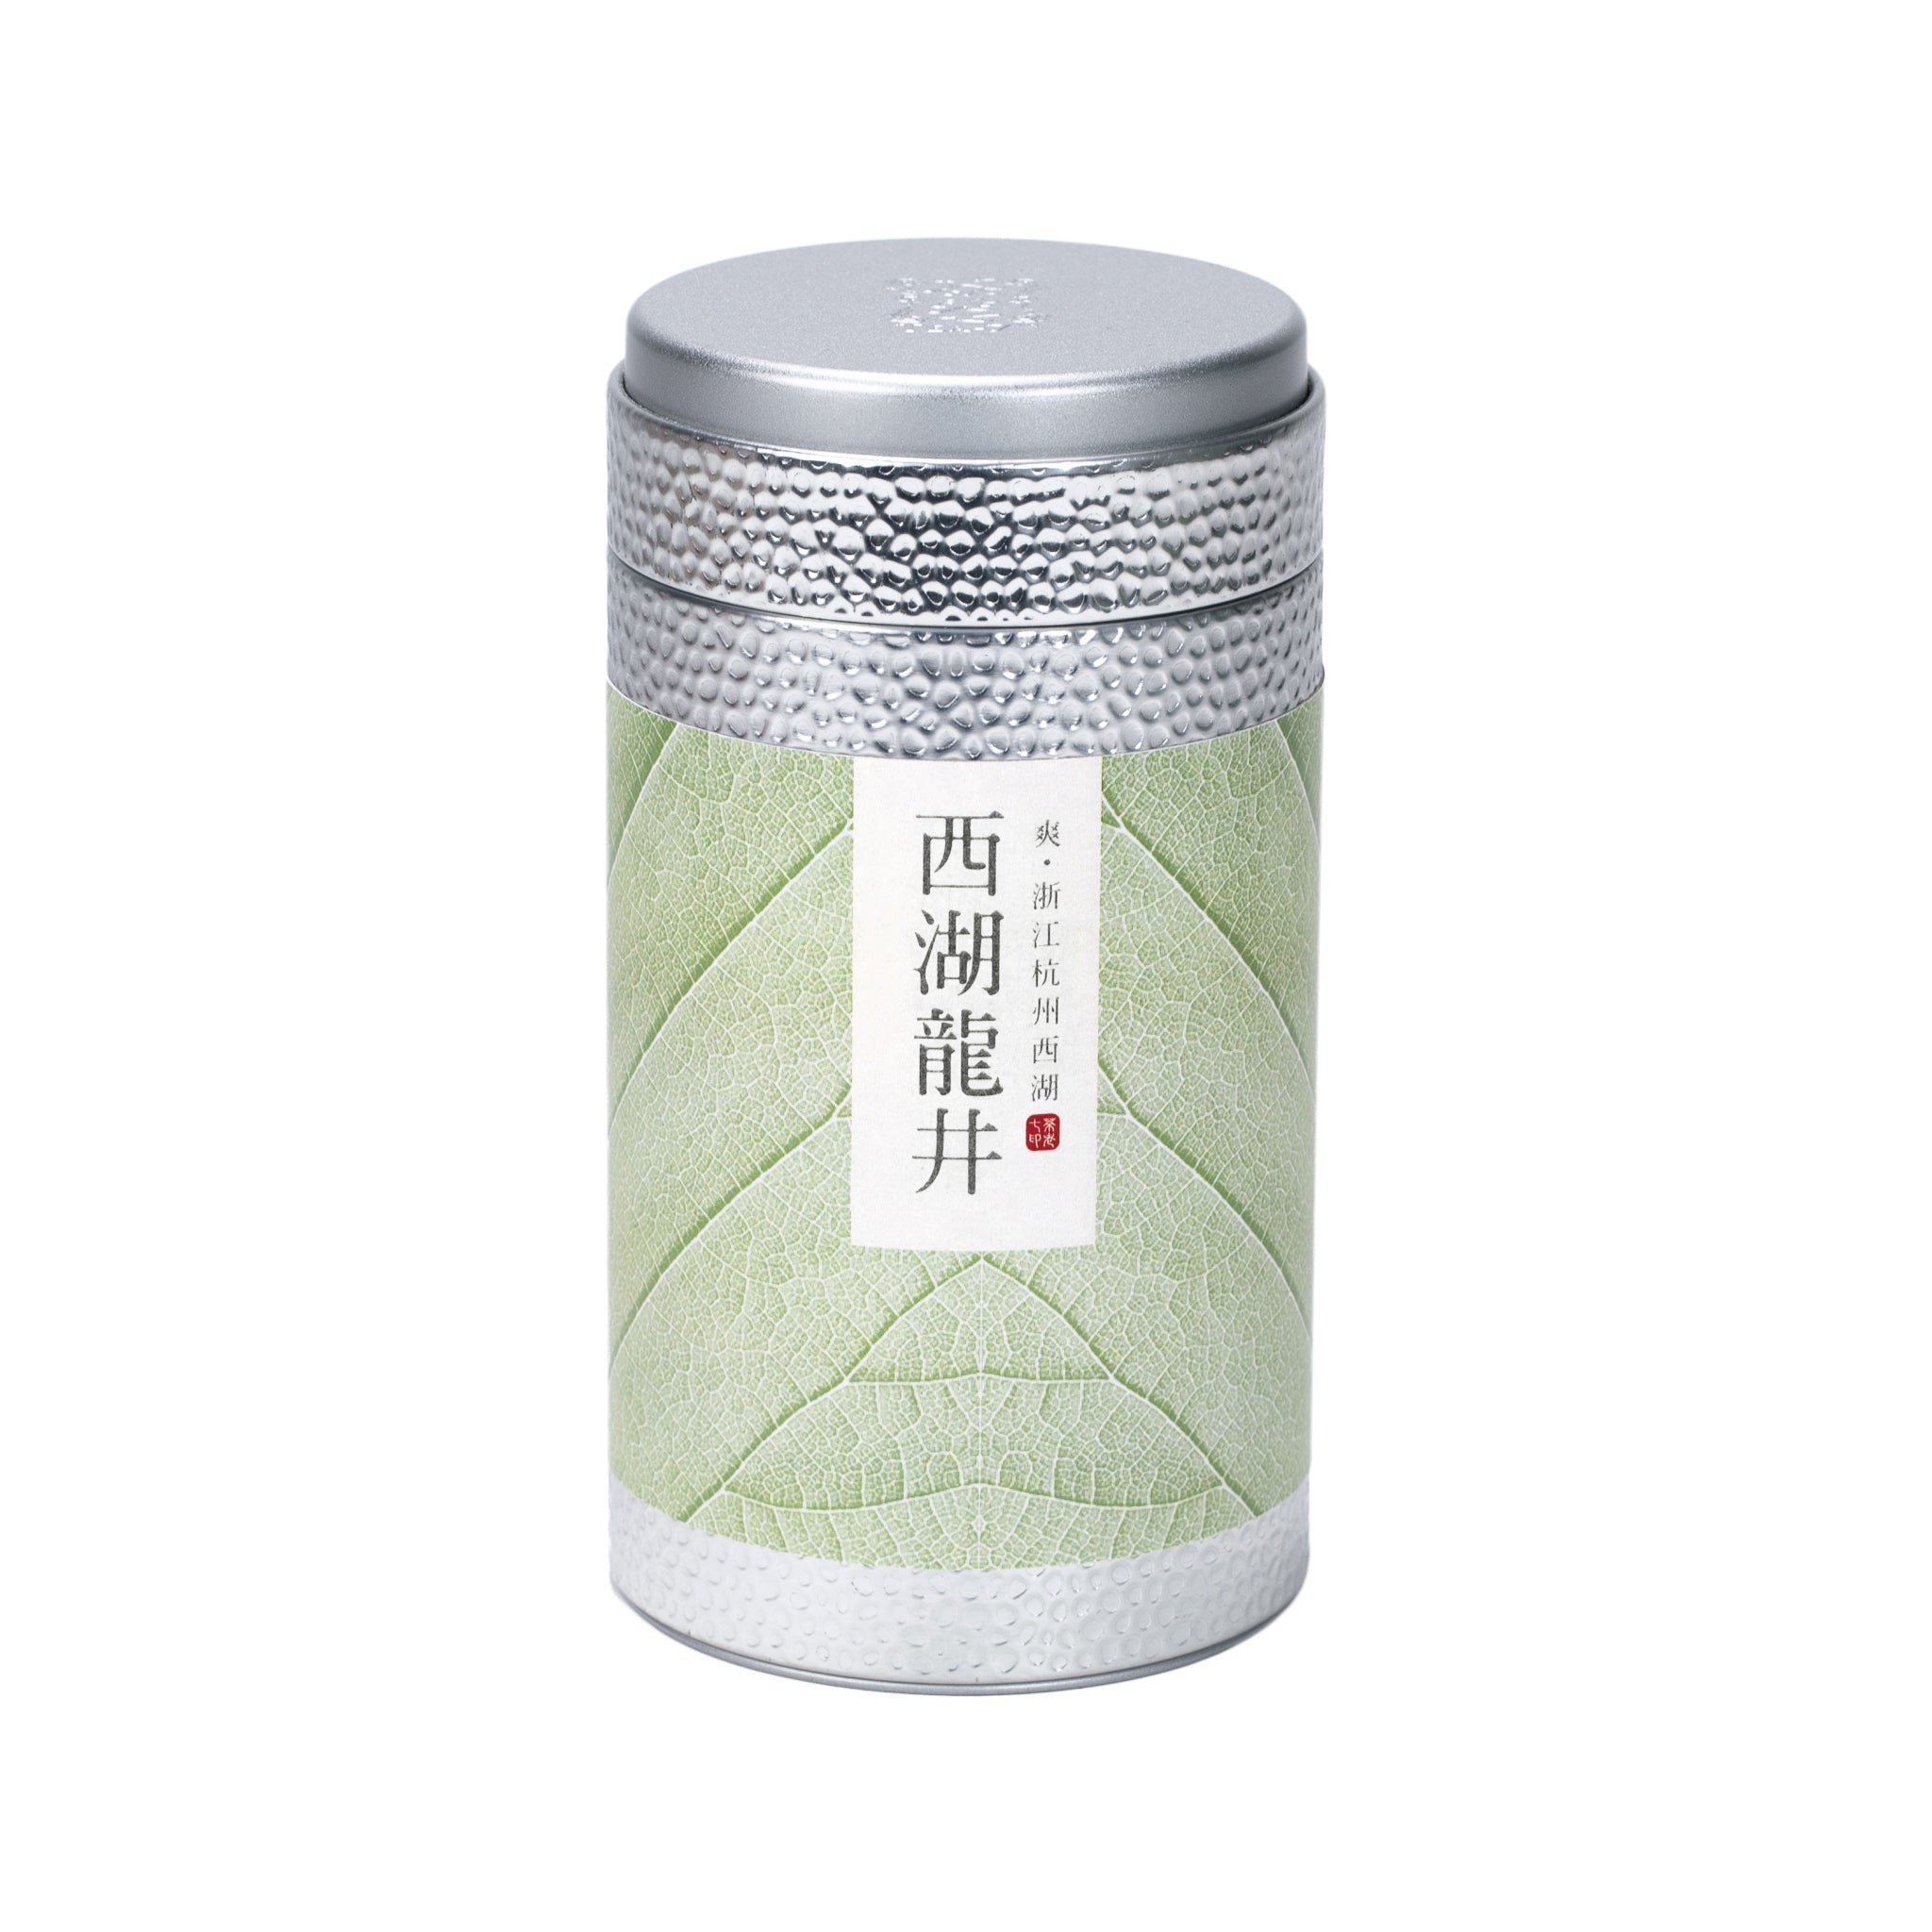 西湖龍井 - 茶包